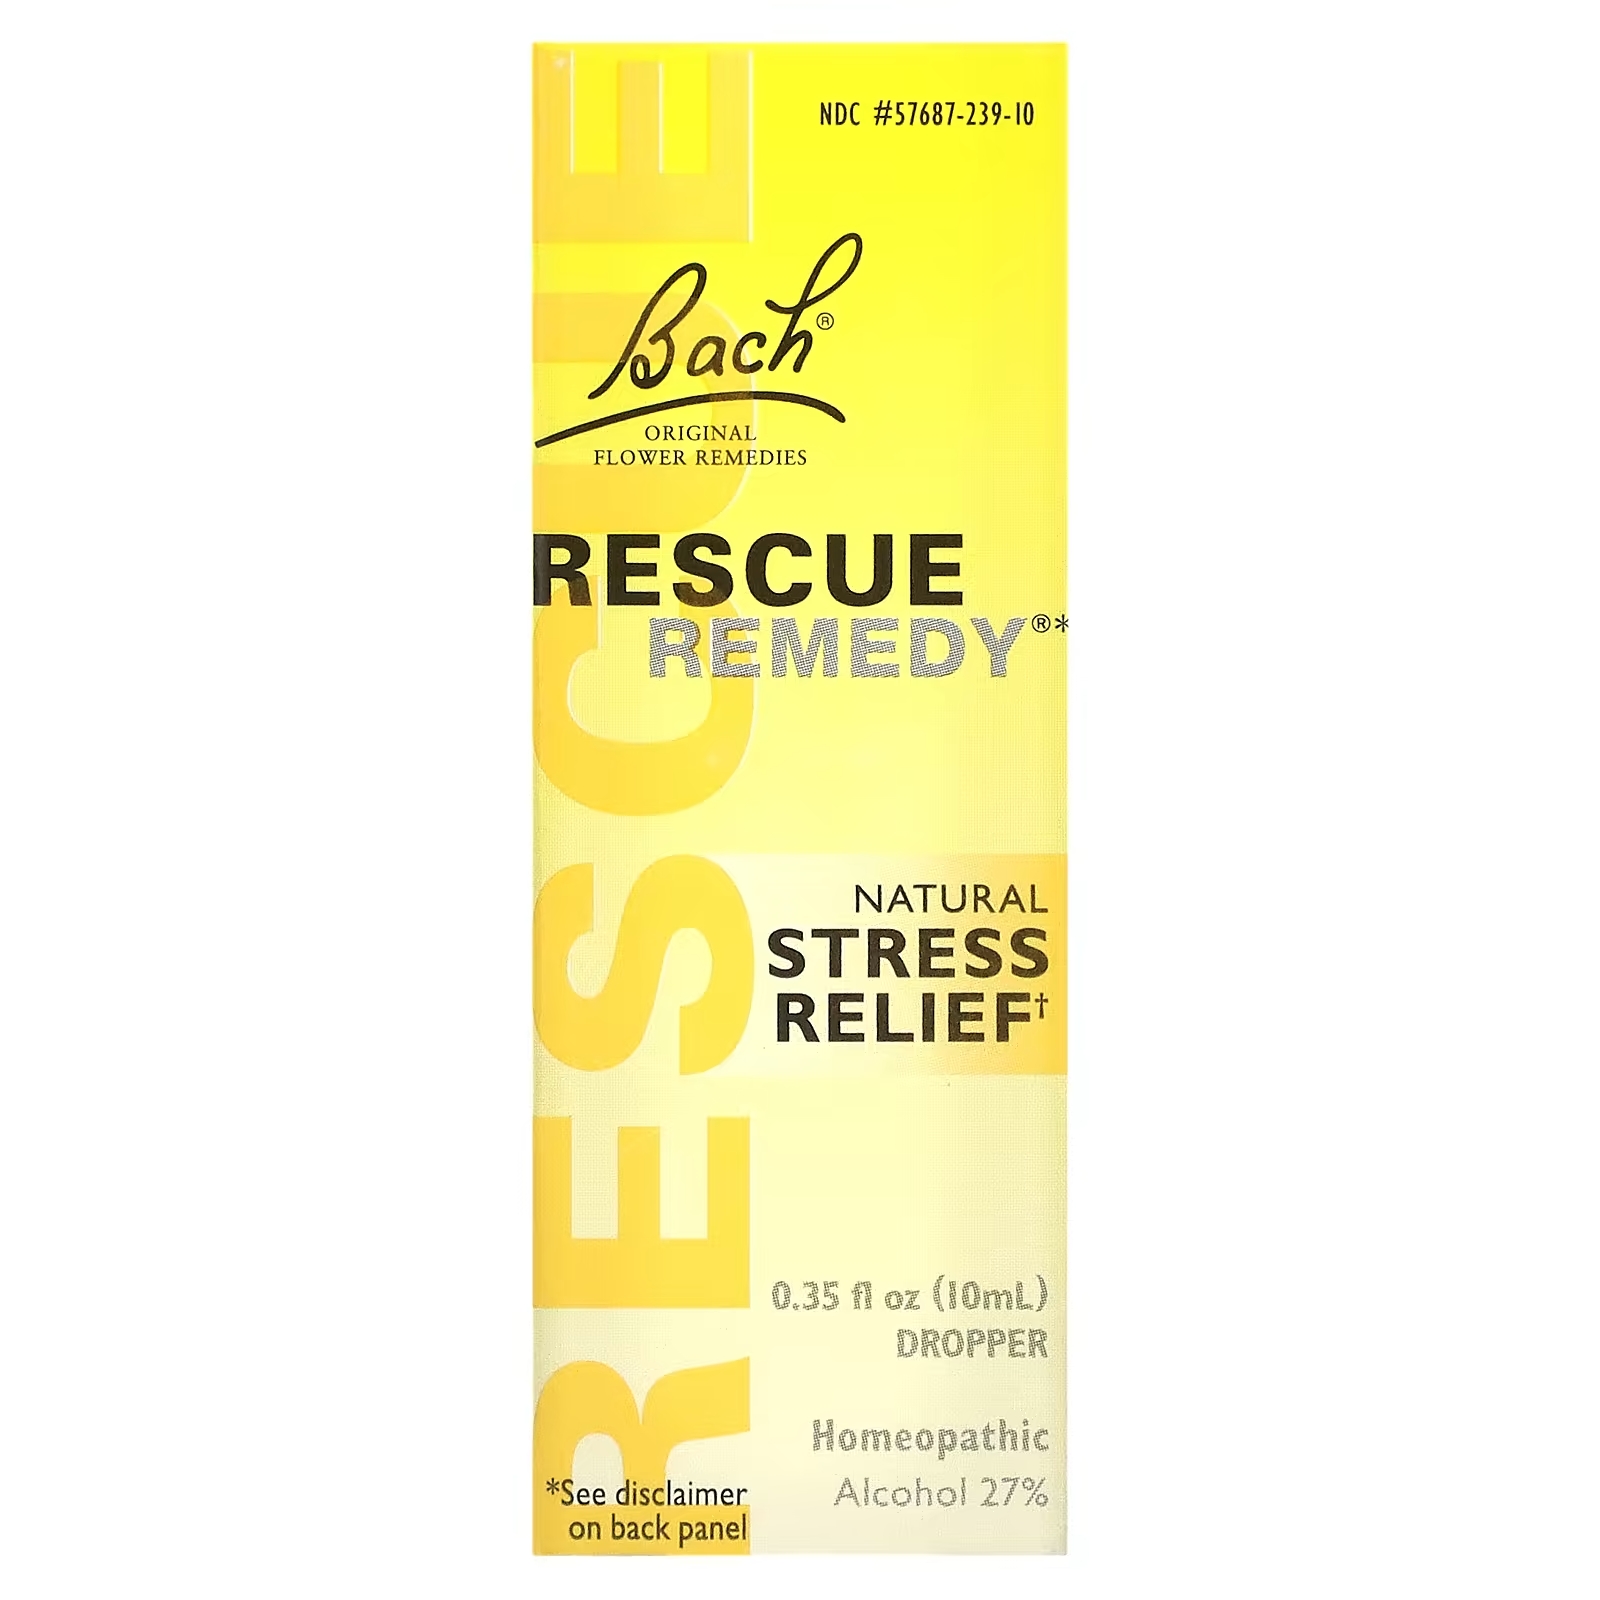 Bach Rescue Remedy оригинальное натуральное цветочное средство для снятия стресса, 10 мл